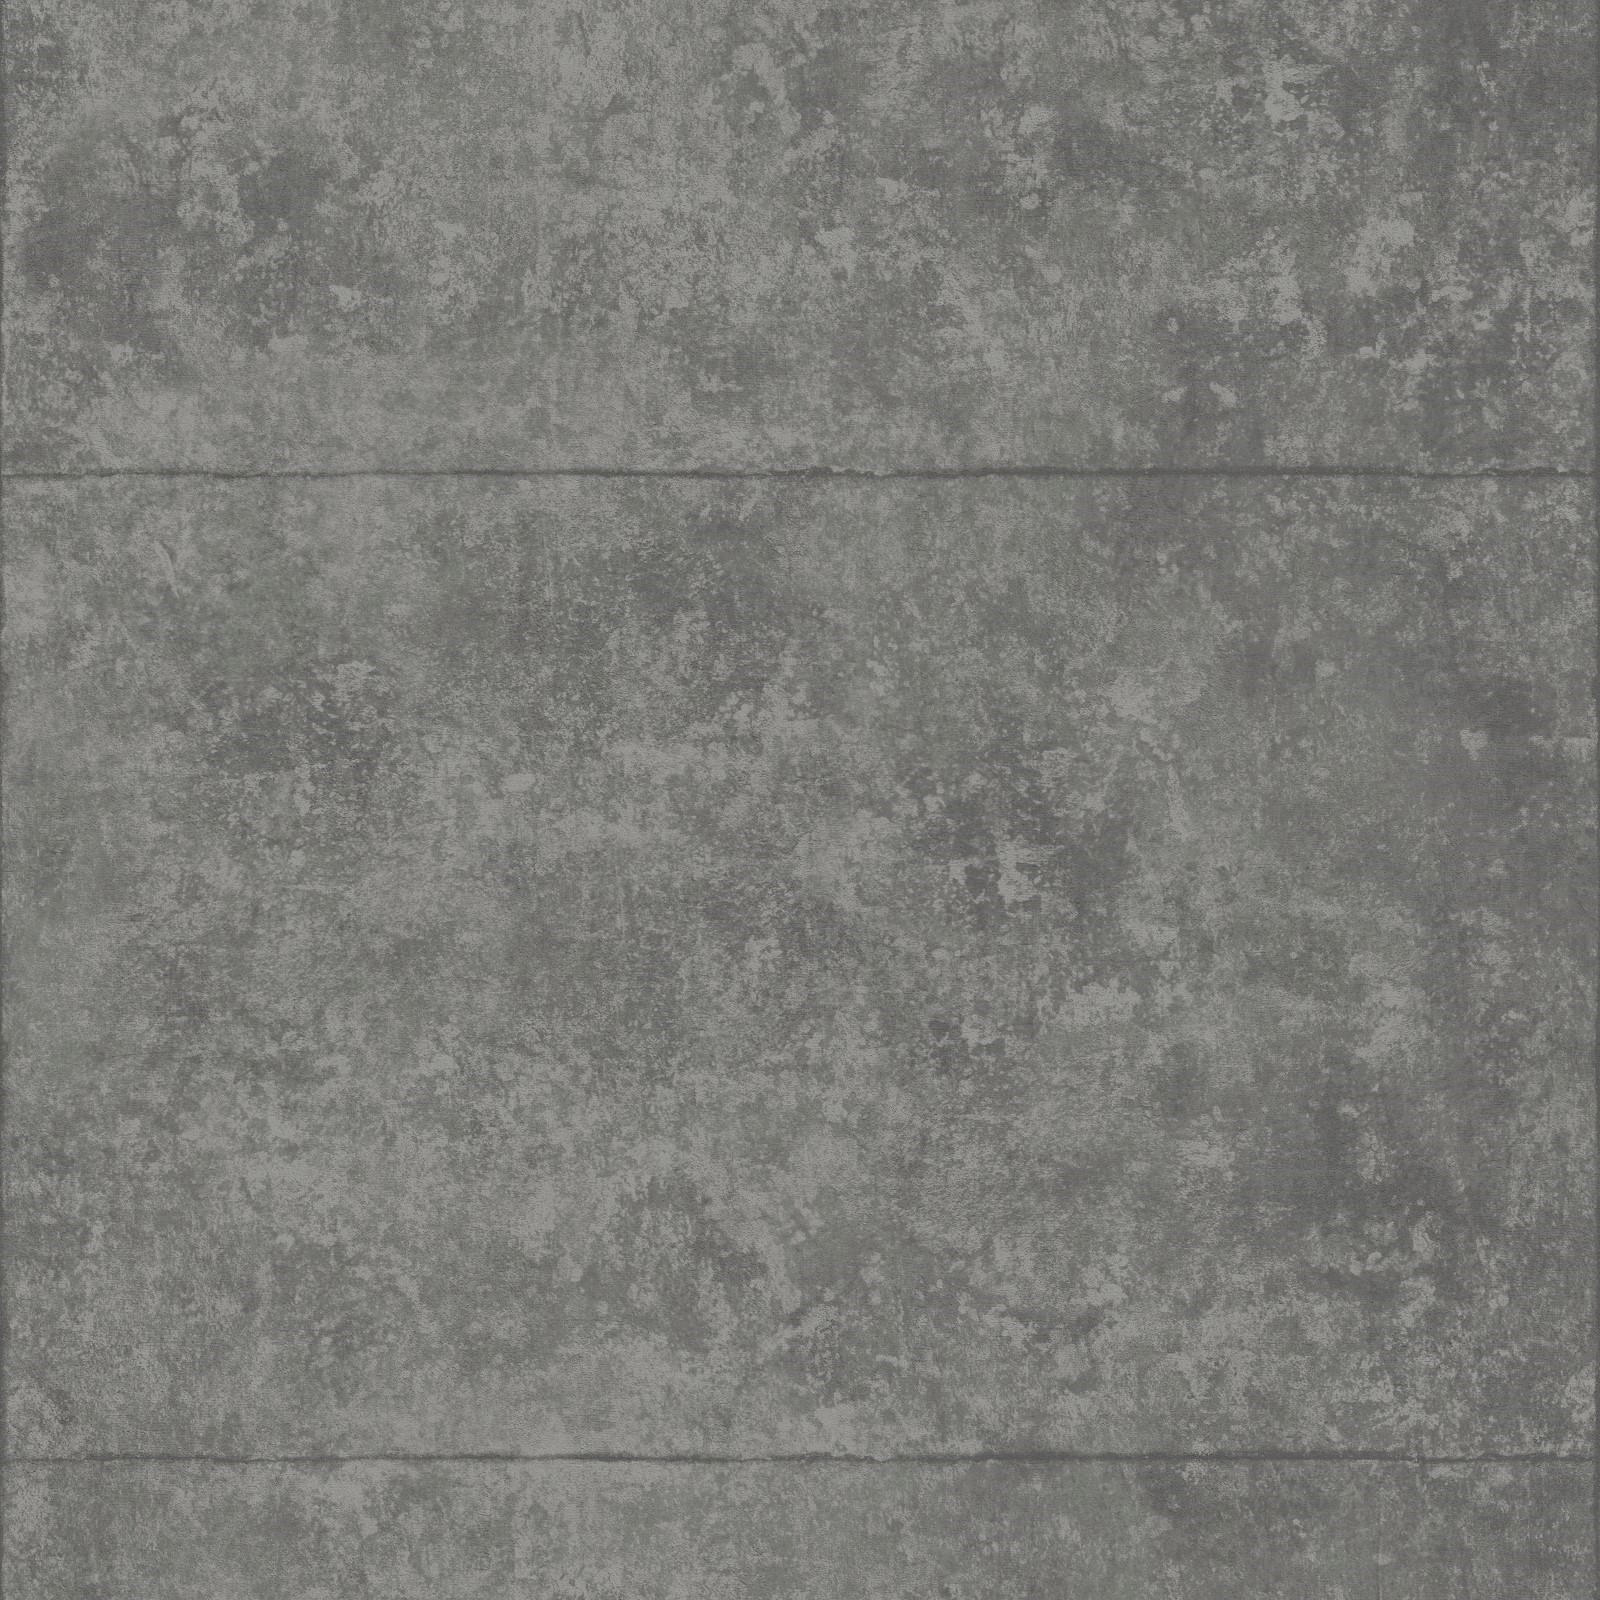 VLIESTAPETE  - Grau, Basics, Papier/Kunststoff (52/1005cm)